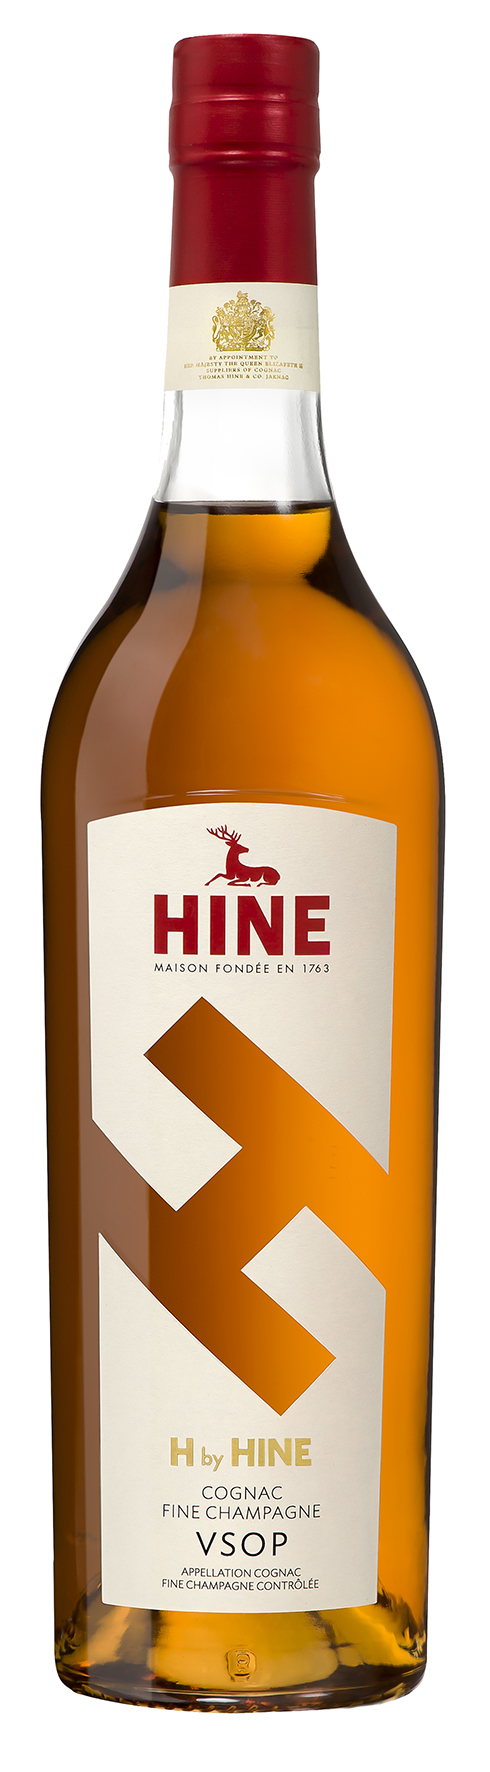 Hine - H by Hine Cognac VSOP 0,7